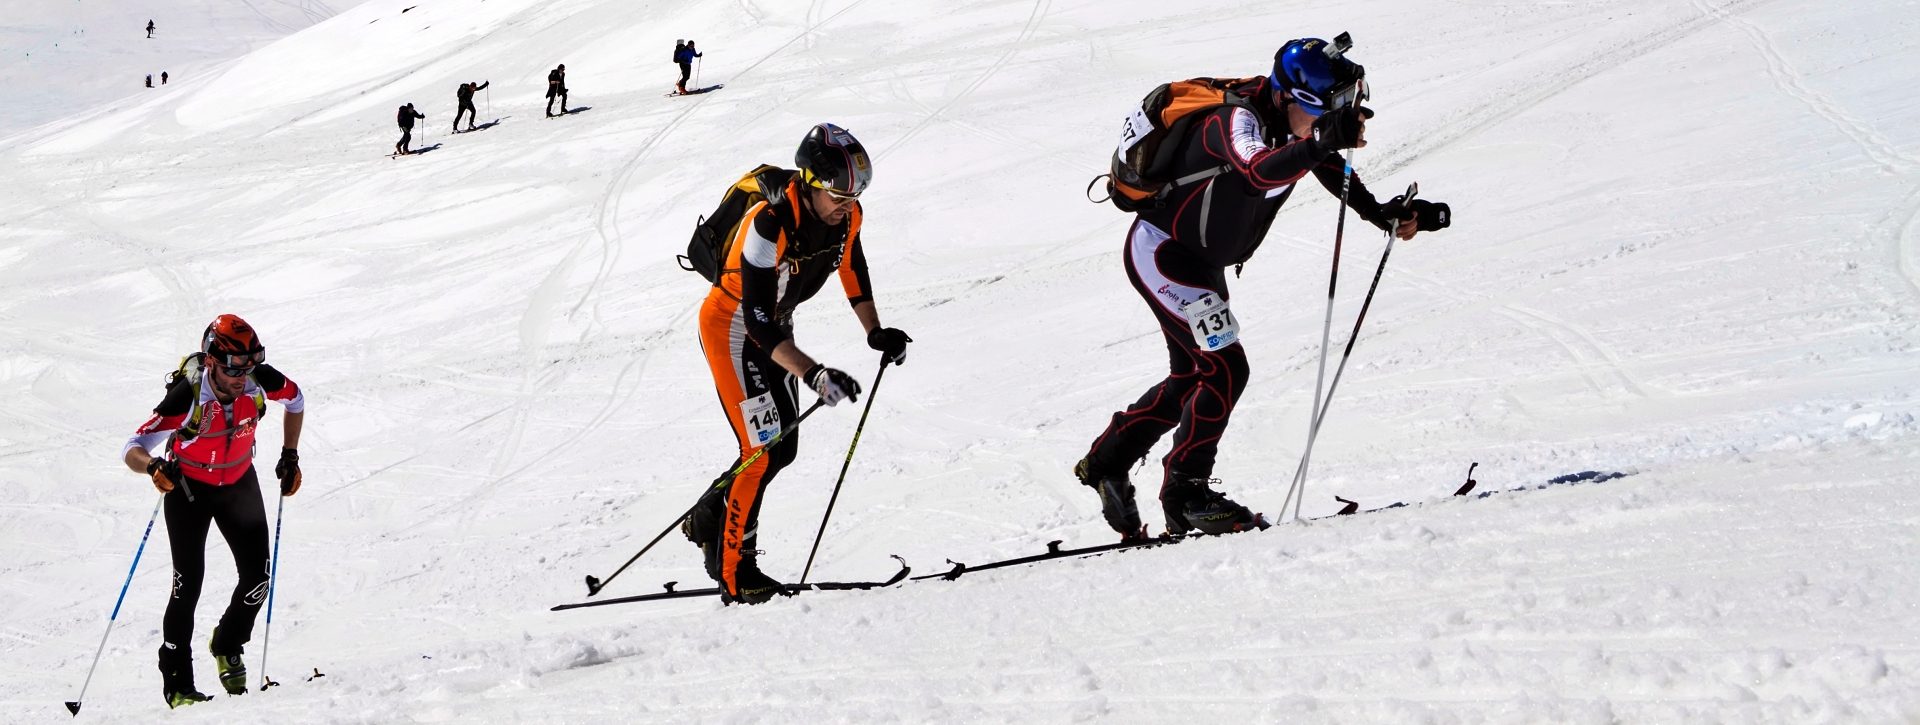 Ascension Sommet Etna Ski Randonnee Splitboard